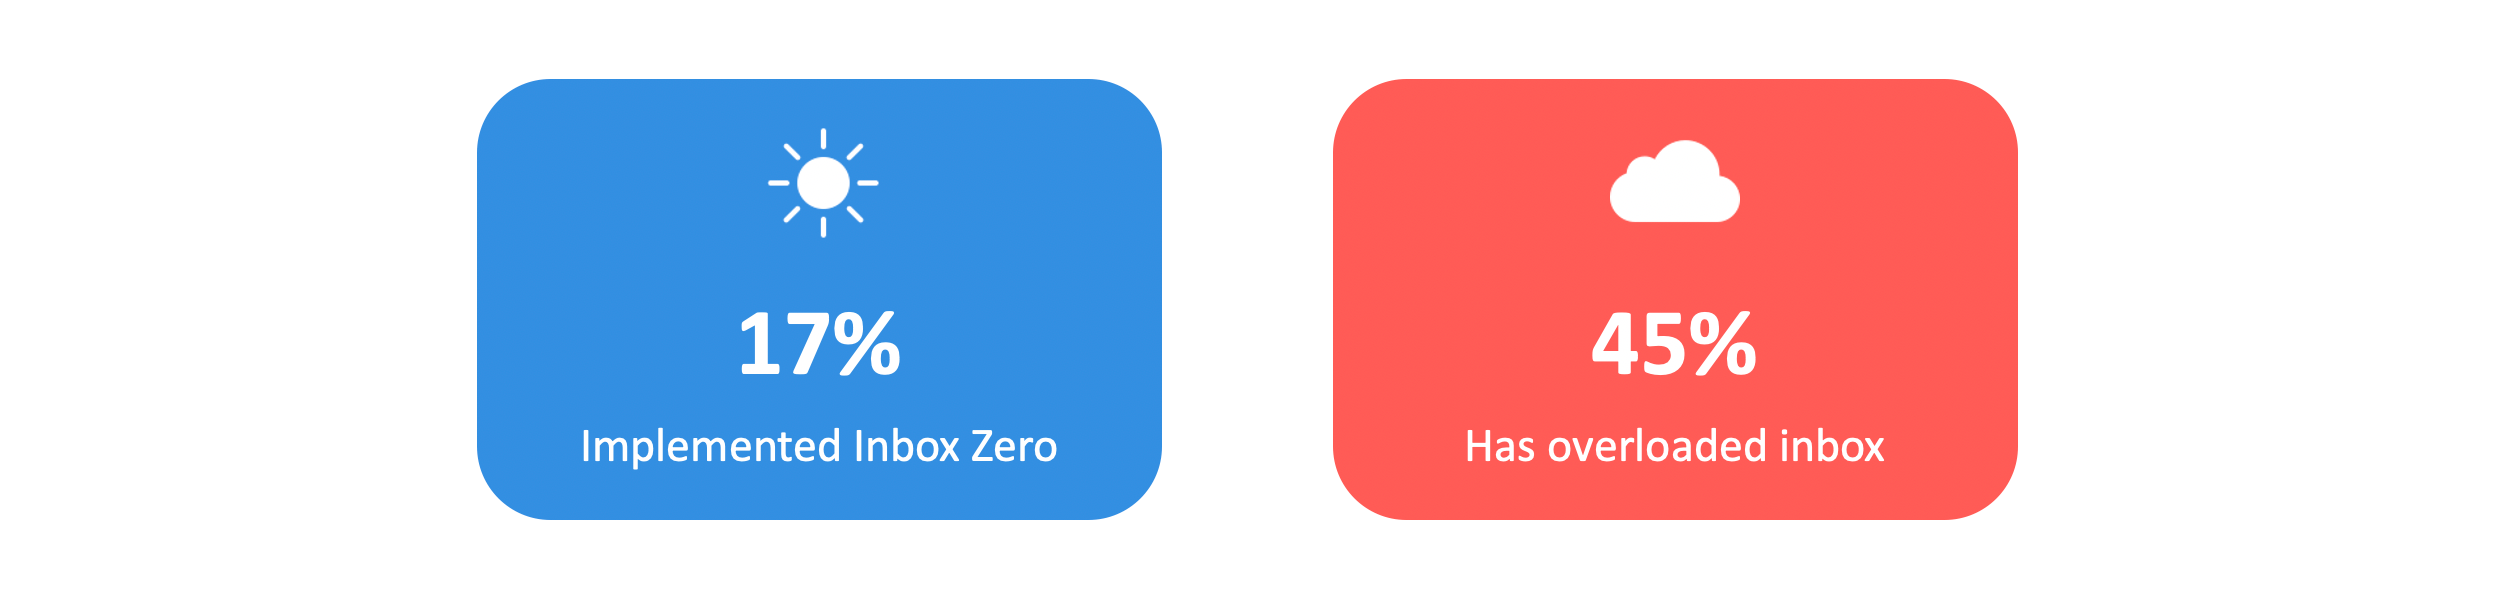 Inbox zero infographic